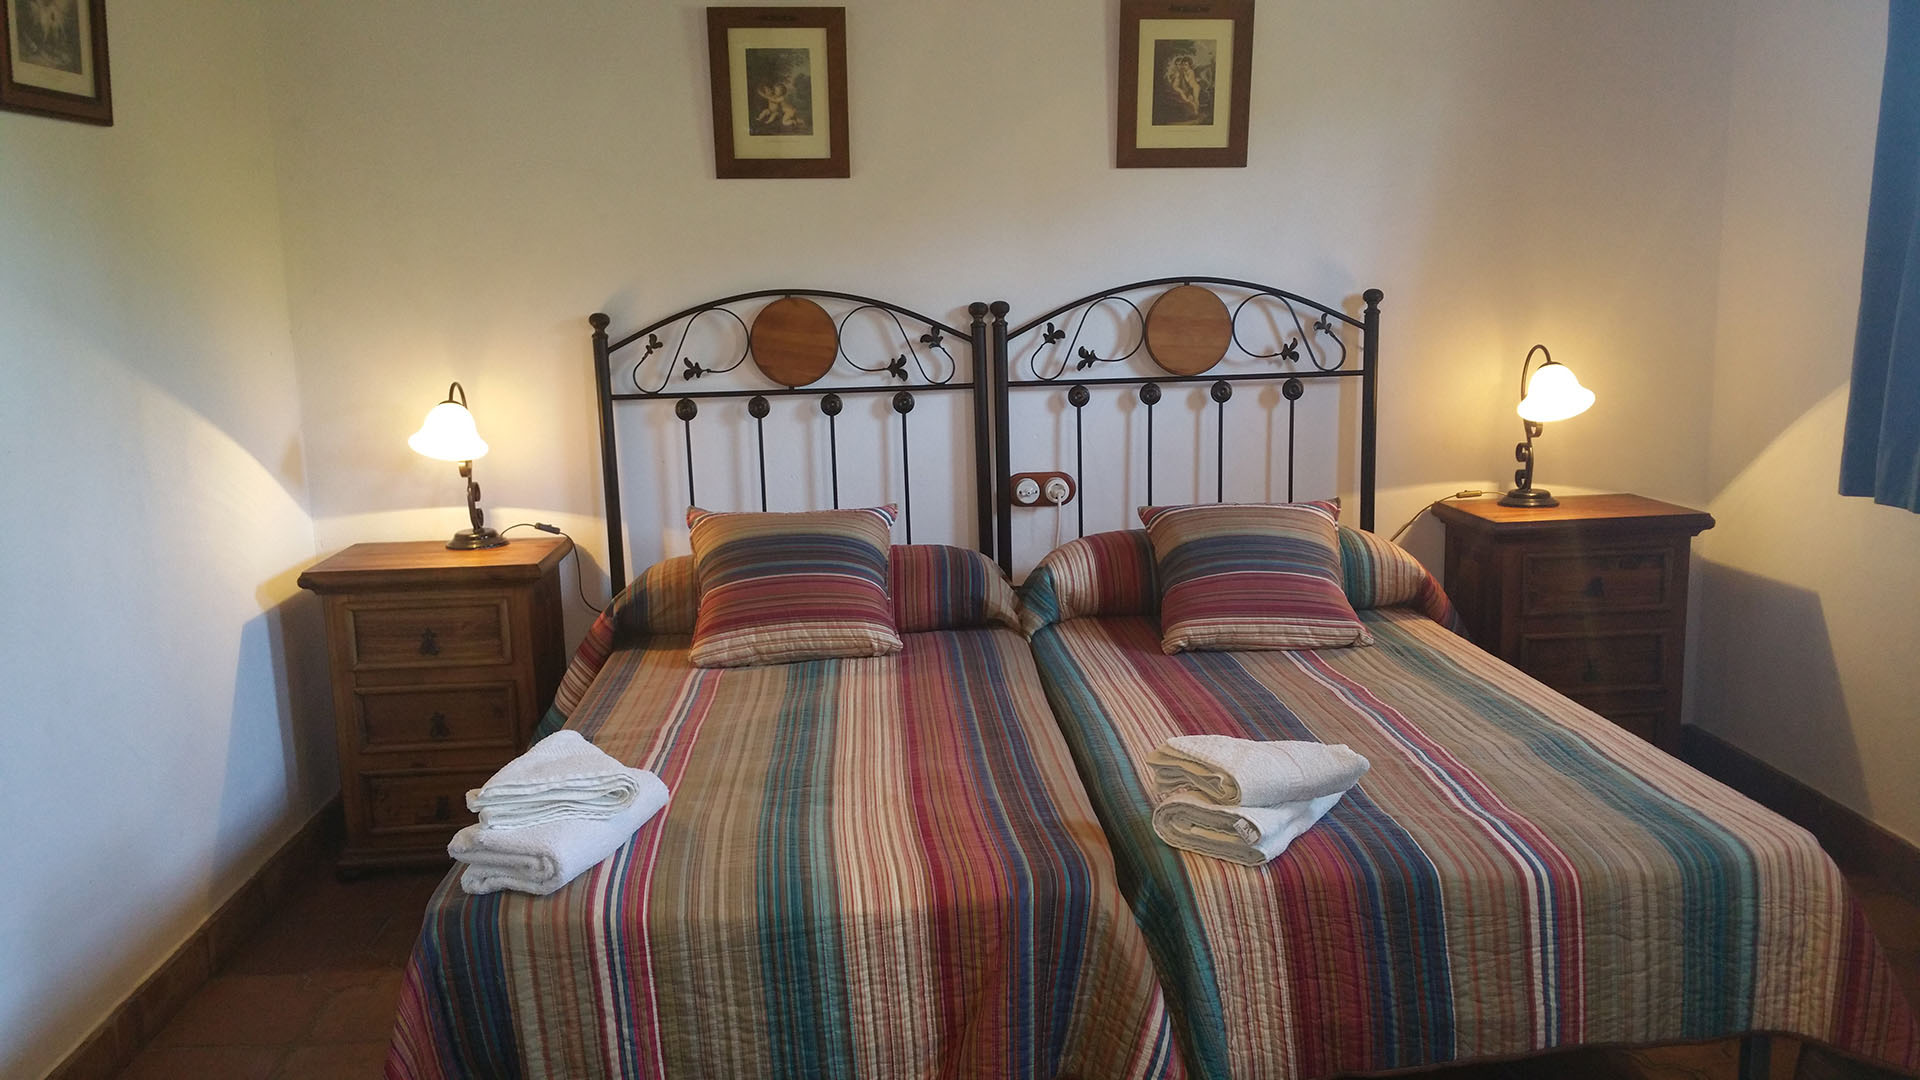 Un dormitorio dos camas individuales y dos mesitas de noche con lamparita. Decoración rusticas de madera y forjado.